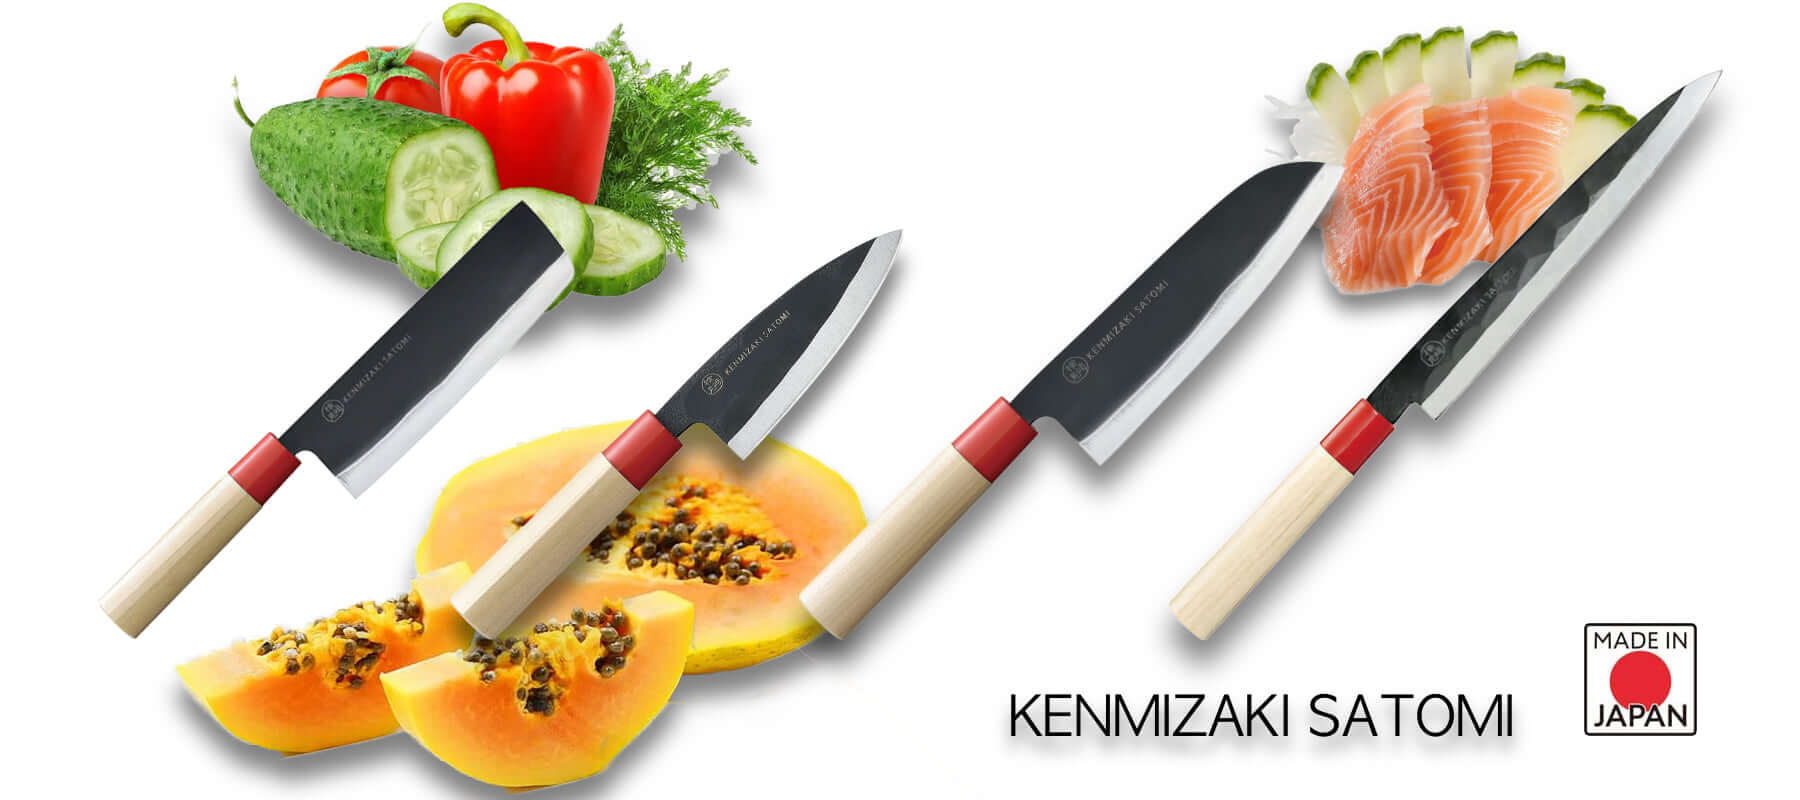 KENMIZAKI SATOMI KNIVES JAPAN